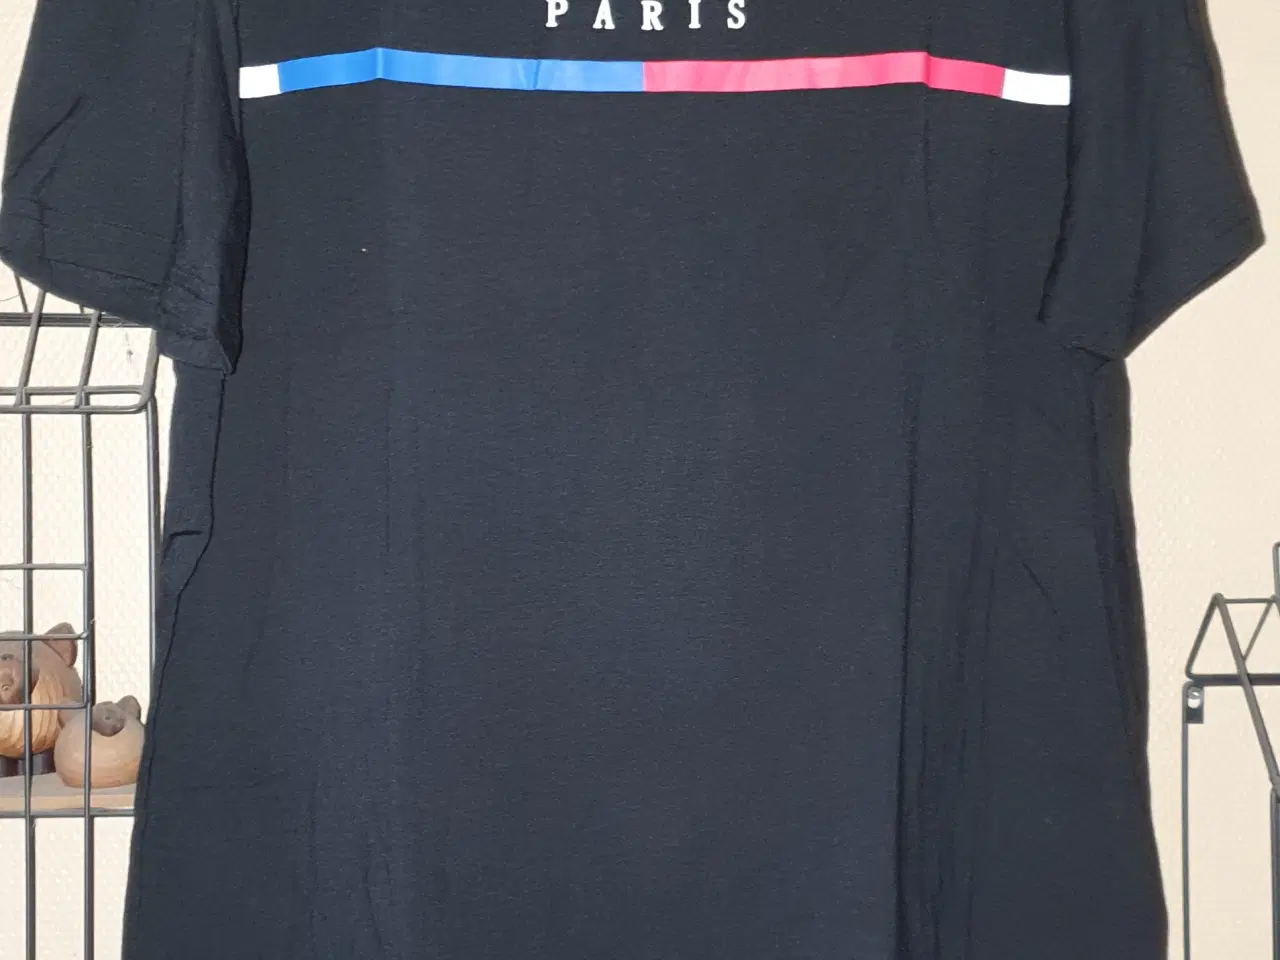 Billede 1 - Sort T-shirt med Paris tryk på brystet